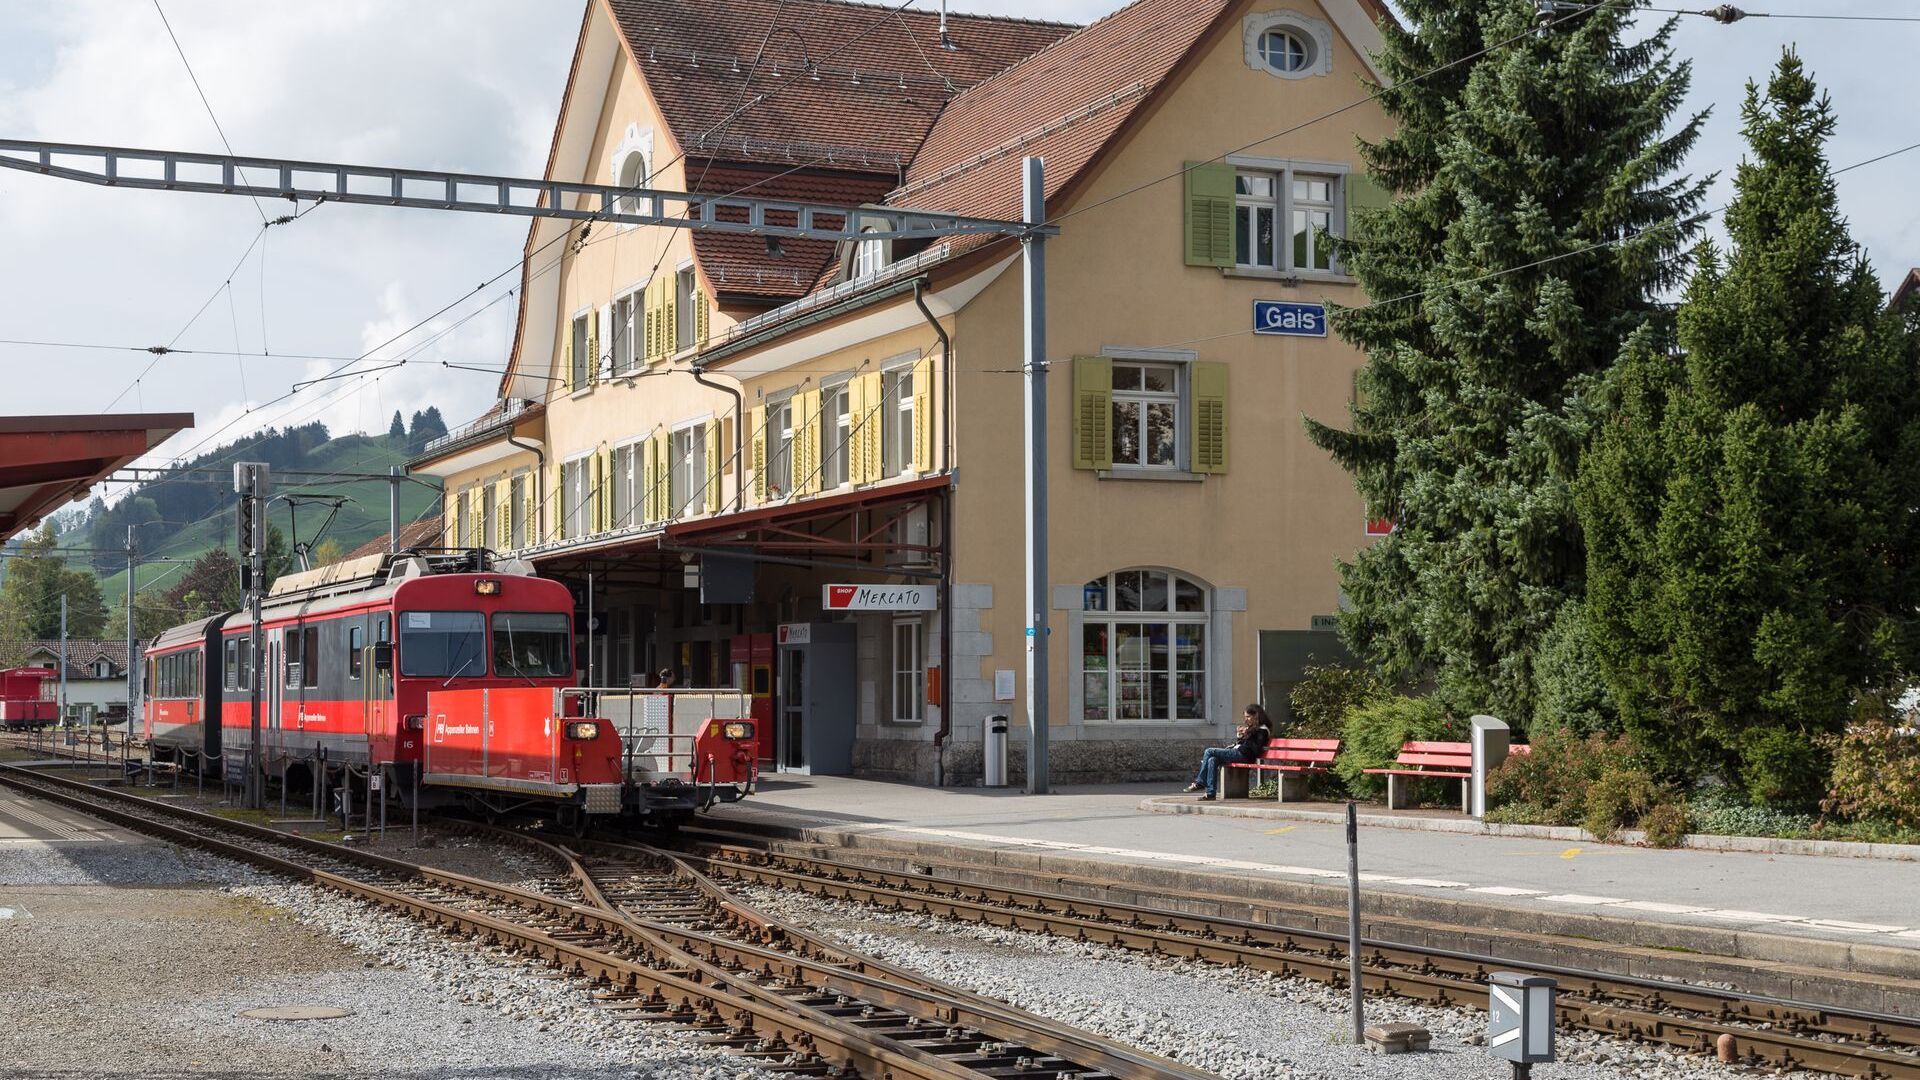 Appenzell Ausserrhoden에 있는 Gais 시의 기차역